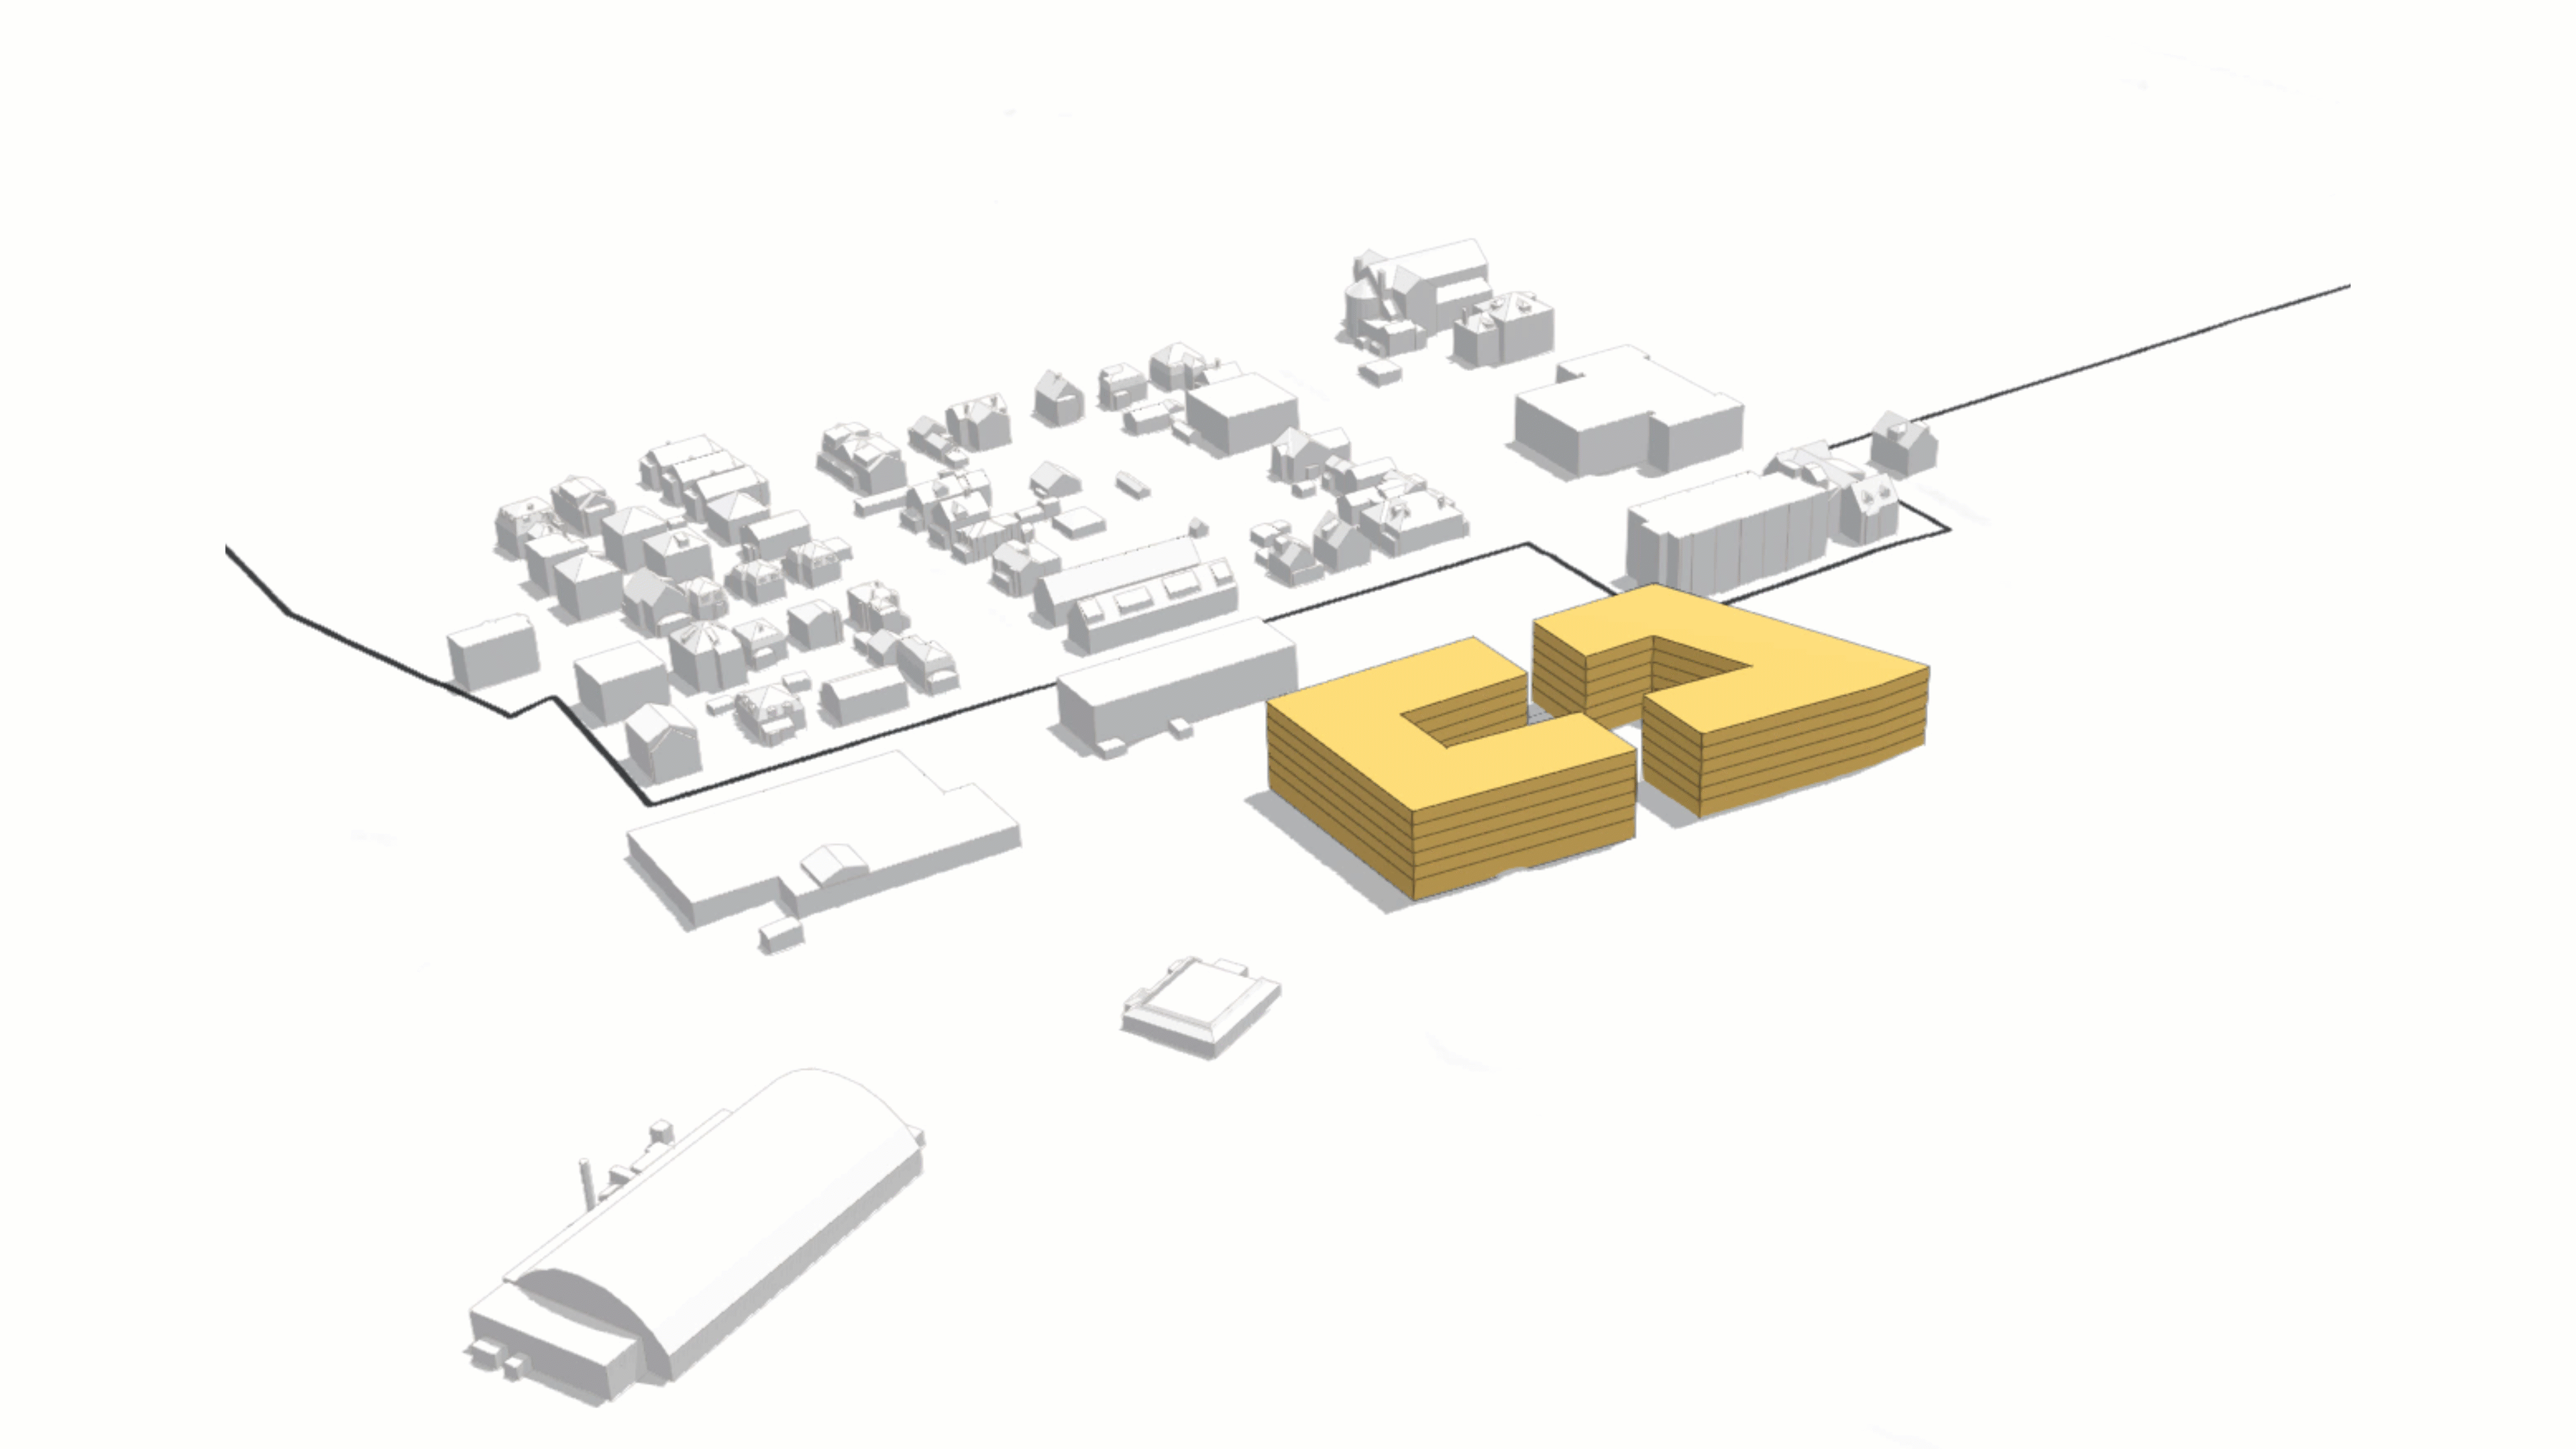 صورة بتنسيق GIF تعرض مباني برتقالية بيضاء وشاحبة تمثل نهجًا تدريجيًا لتطوير مبنى جديد